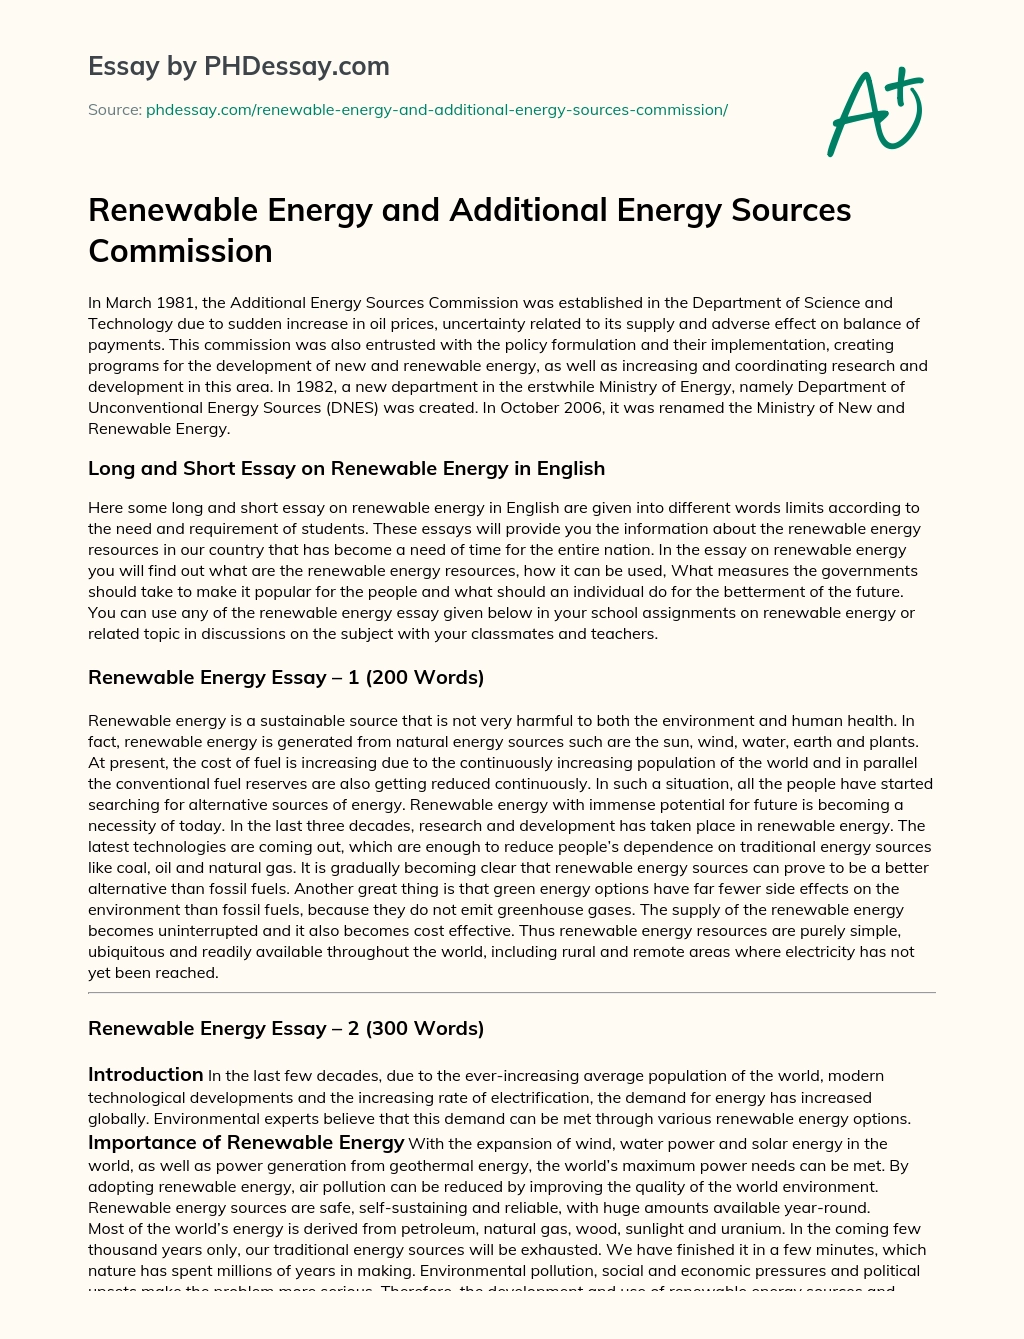 solar energy essay introduction